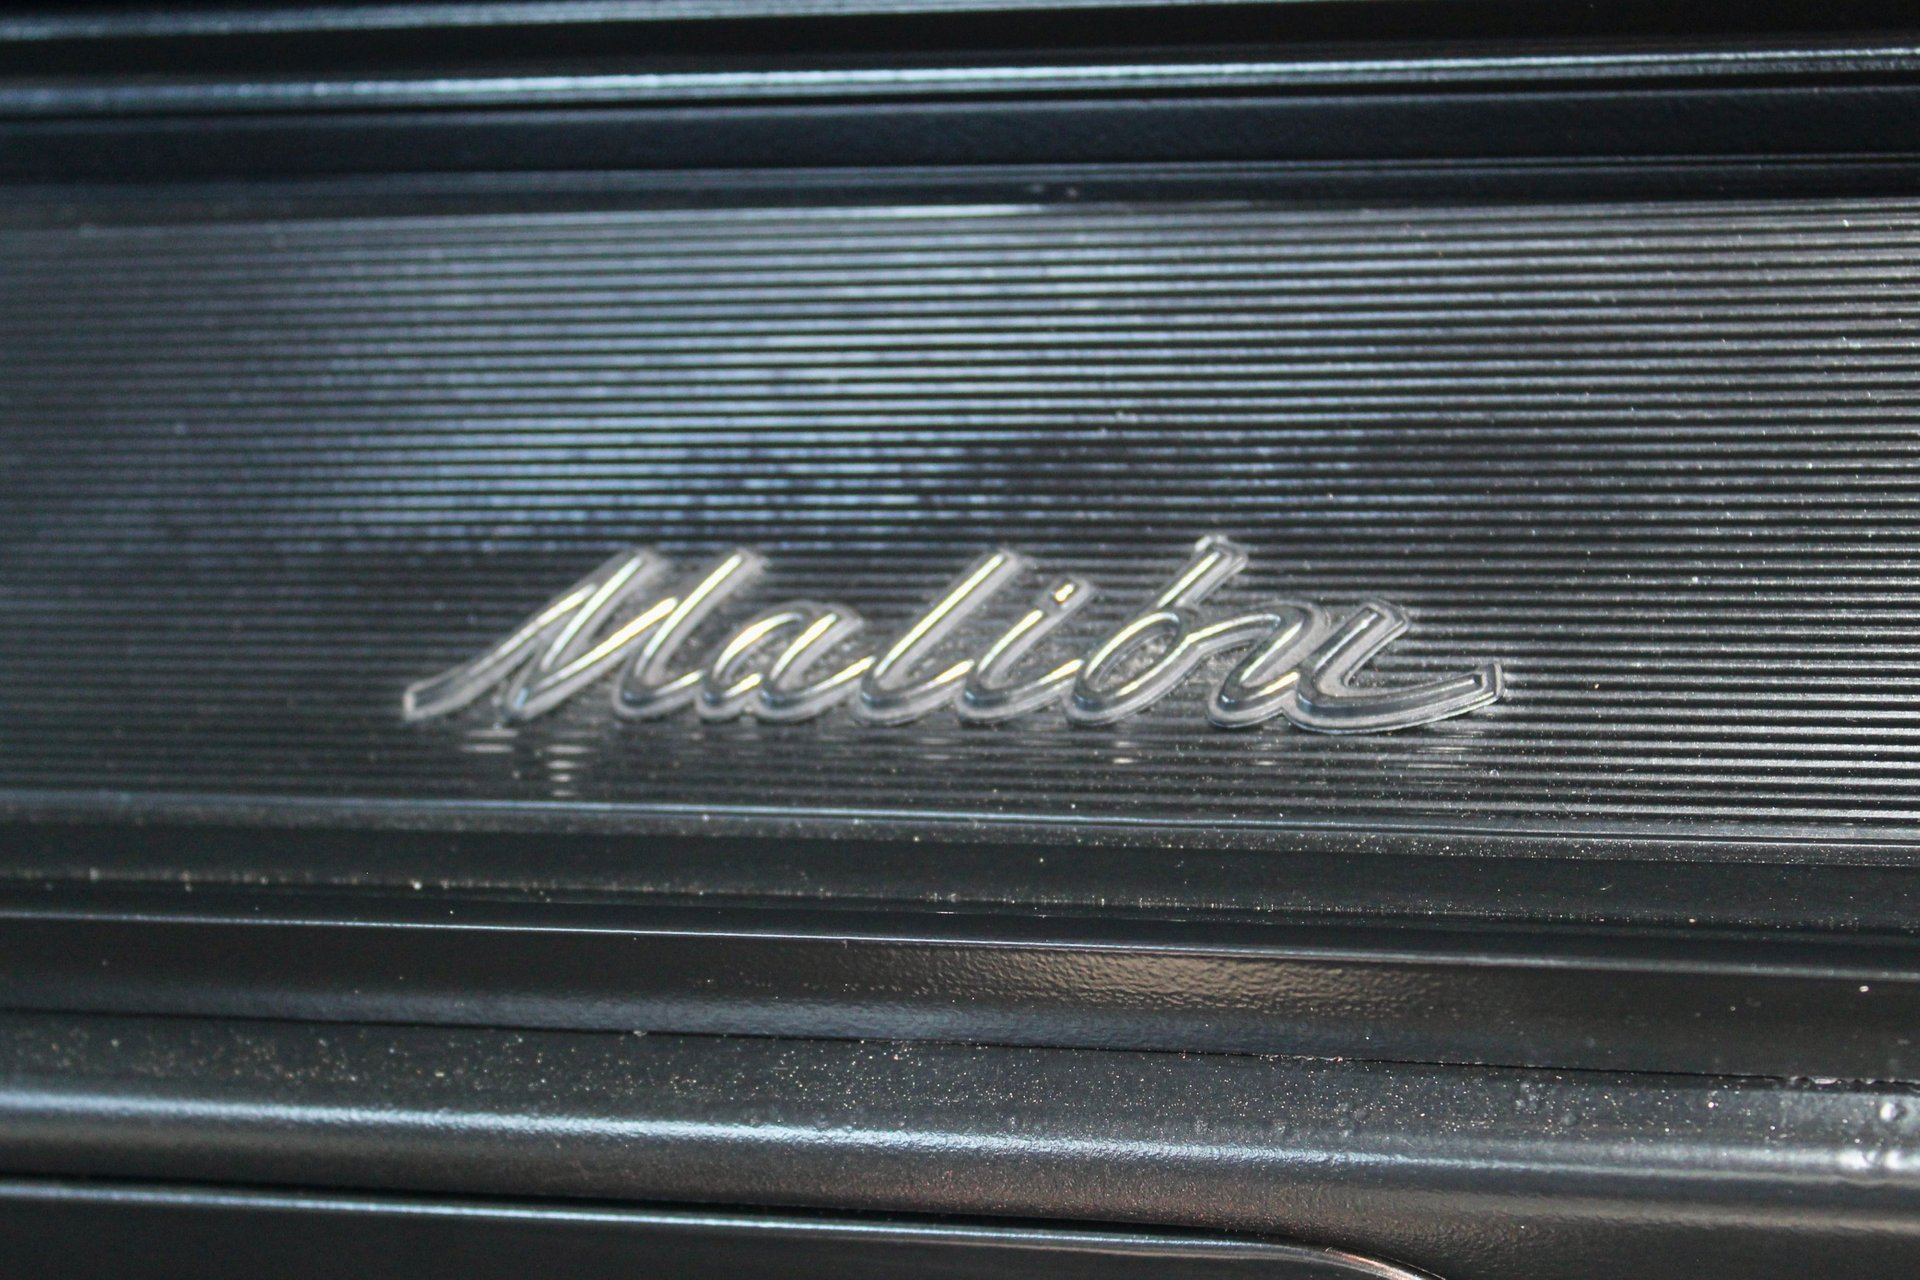 For Sale 1967 Chevrolet Chevelle Malibu